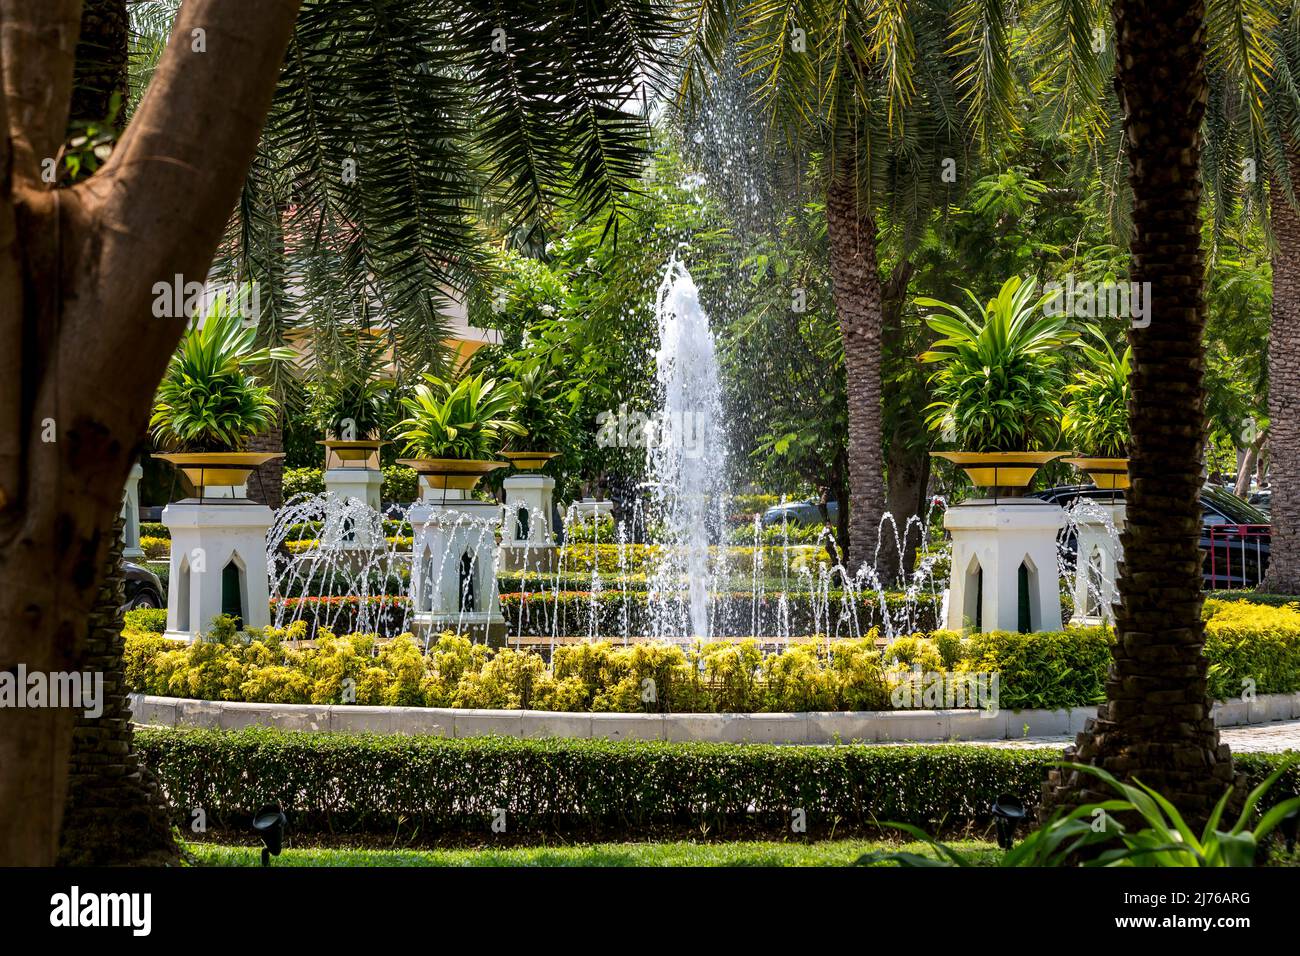 Fountain, Dusit Thani hotel complex, Hua Hin, Prachuap Khiri Khan province, Thailand, Gulf of Thailand, Asia Stock Photo